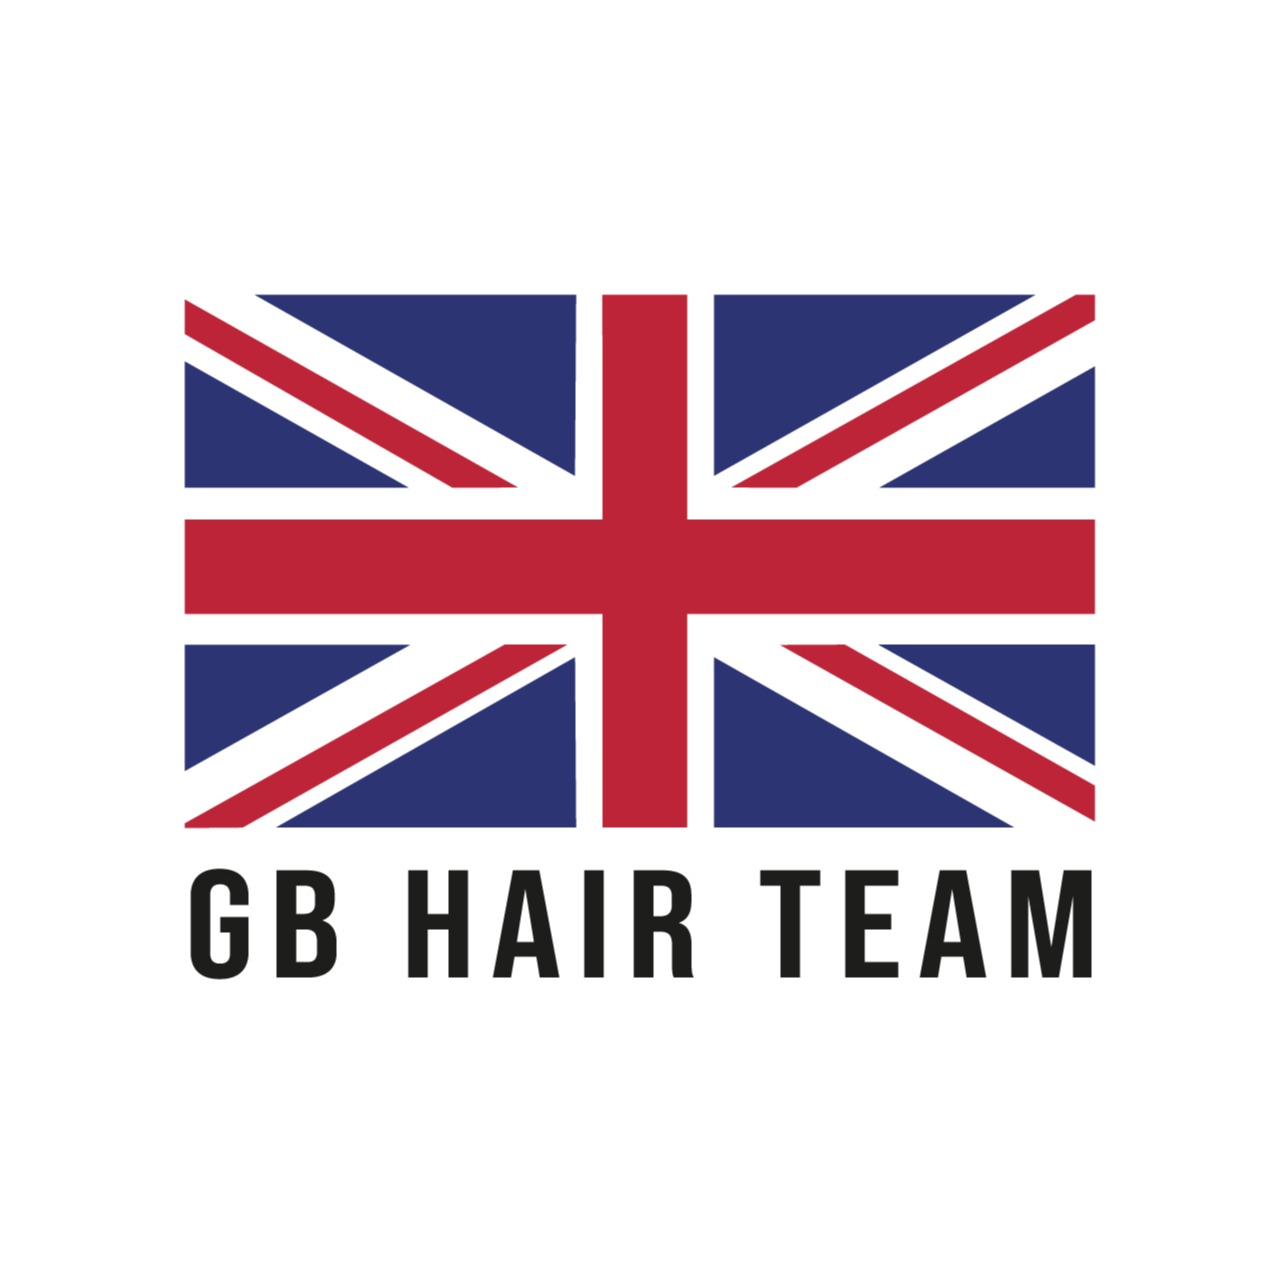 GB Hair Employer Skills Academy